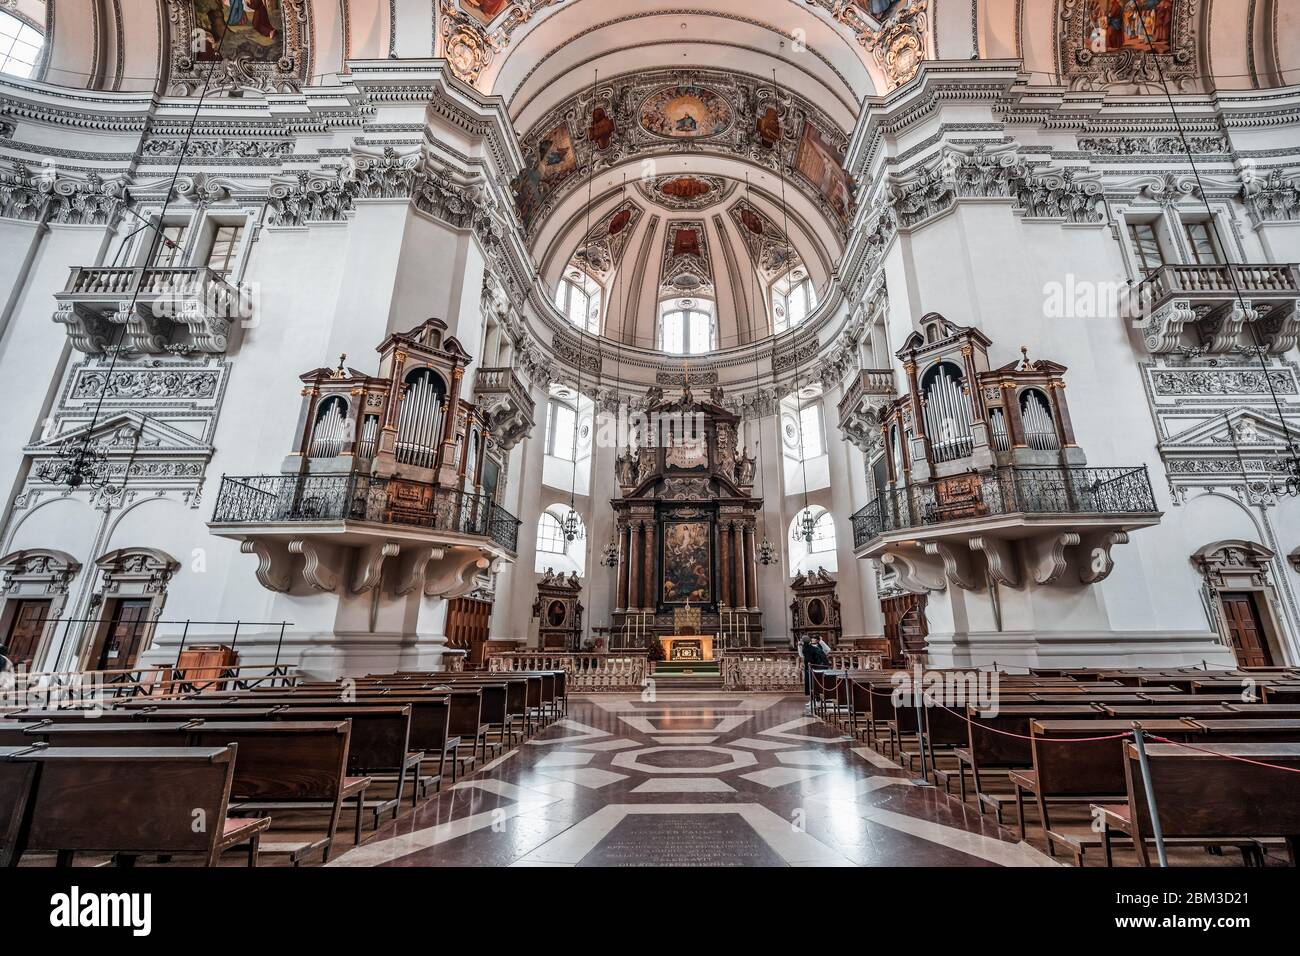 4 febbraio 2020 - Salisburgo, Austria: Angolo di salita della cupola centrale, dipinti murali e organo pipe sopra le zampe nella navata della Cattedrale di Salisburgo Foto Stock